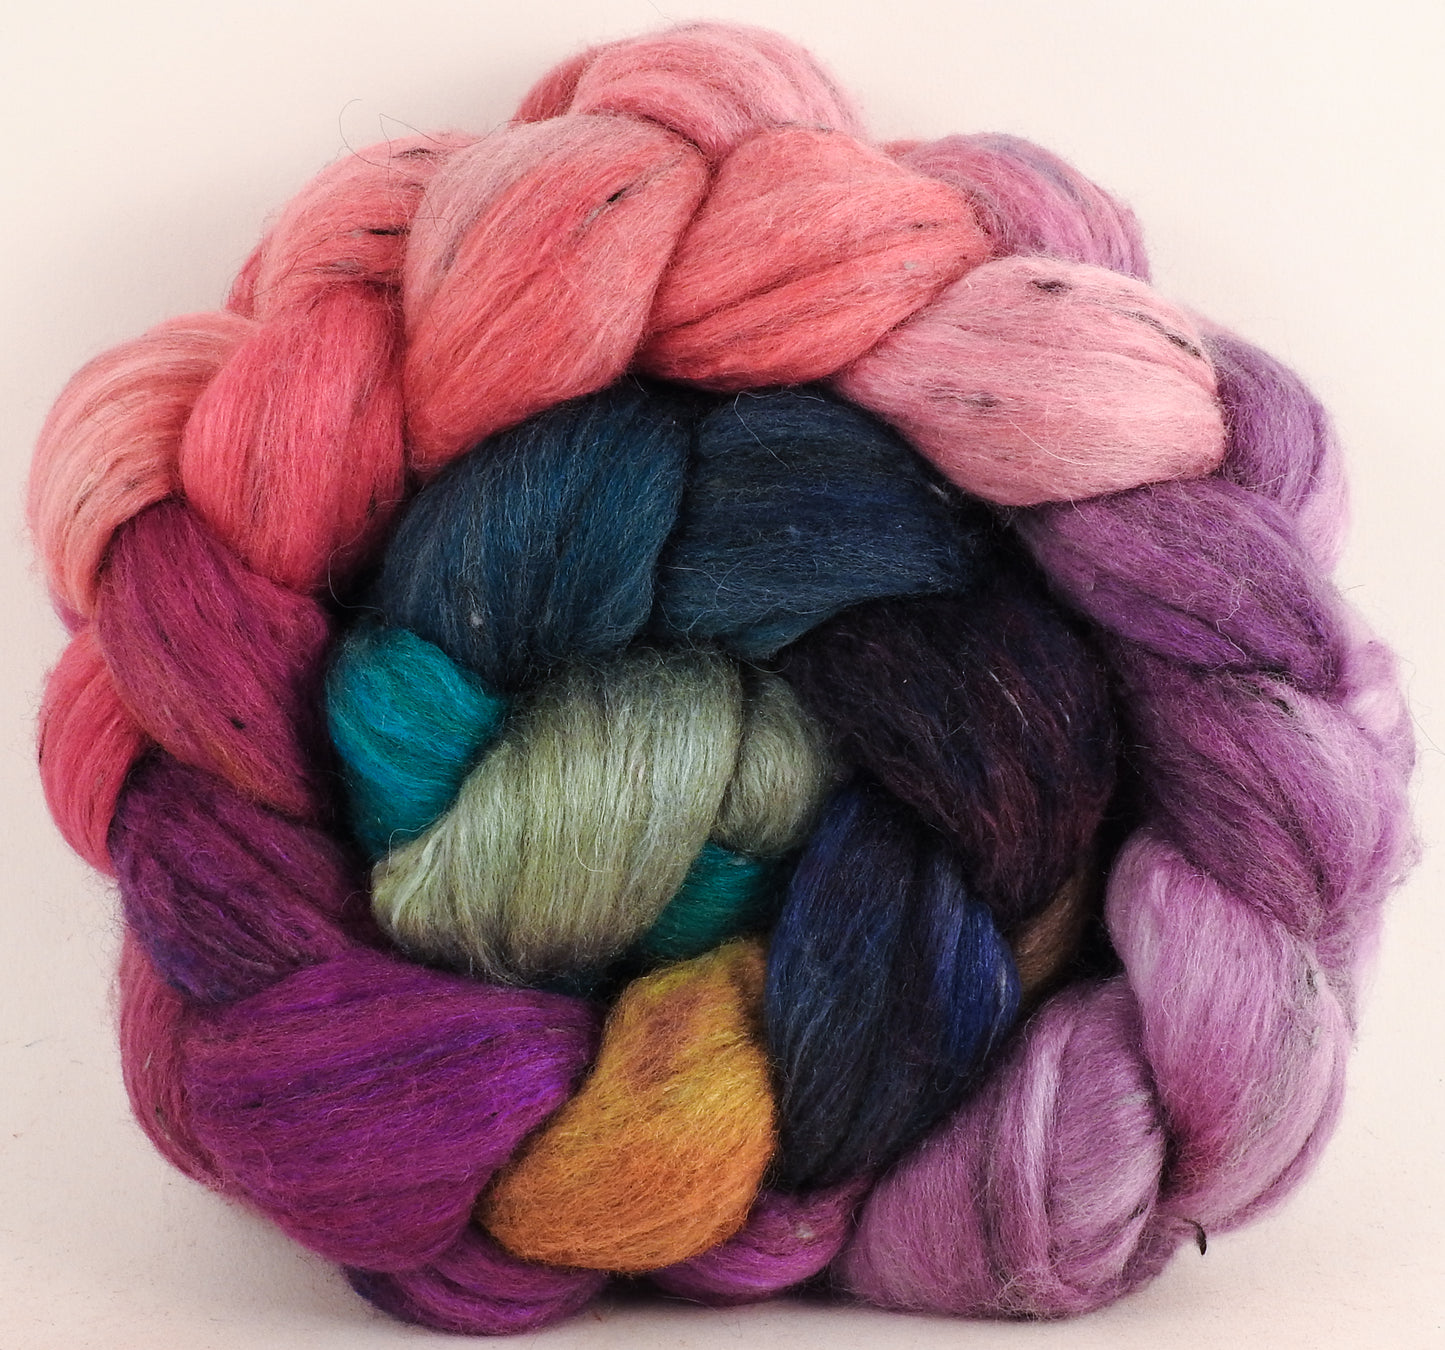 Batt in a Braid #49 - Color Me Happy (5.5 oz) - Polwarth/ Mulberry Silk/ Tweed Blend (50/25/25)